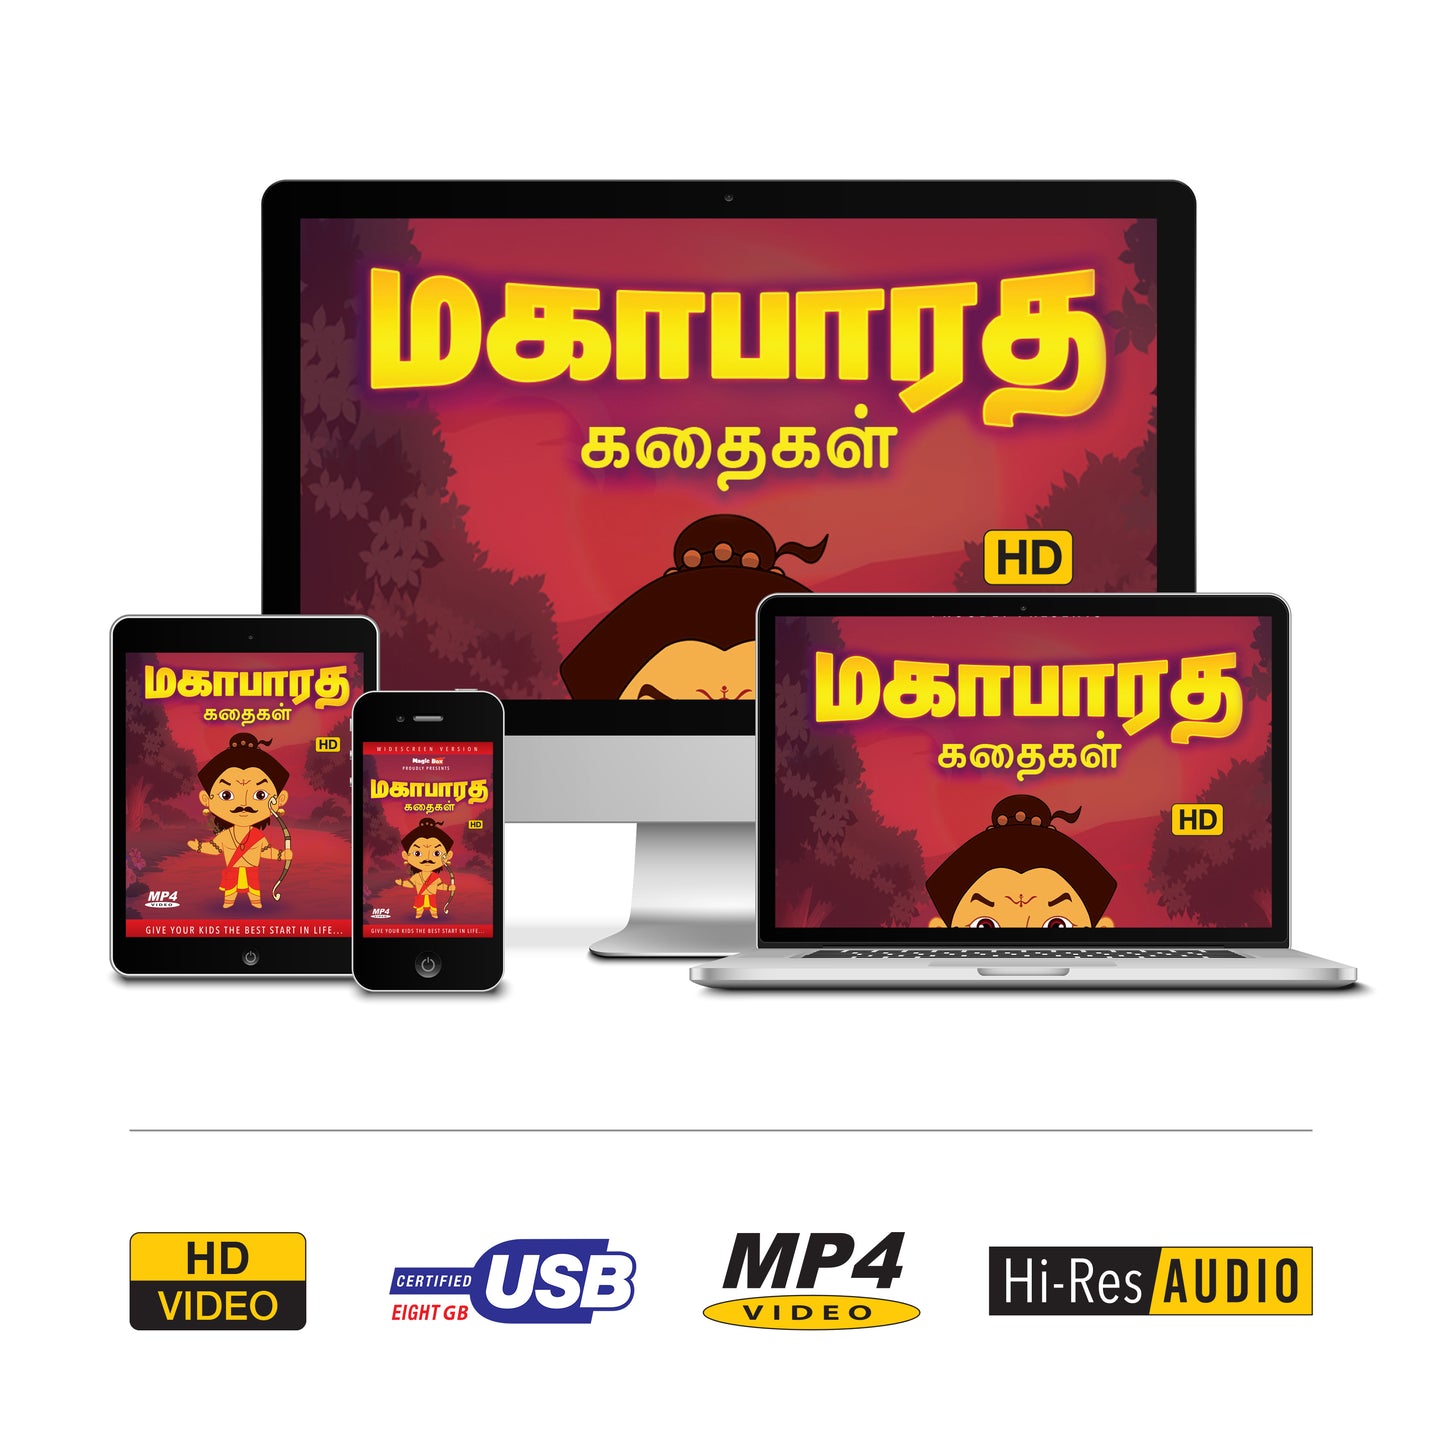 Mahabaratha Stories-Tamil